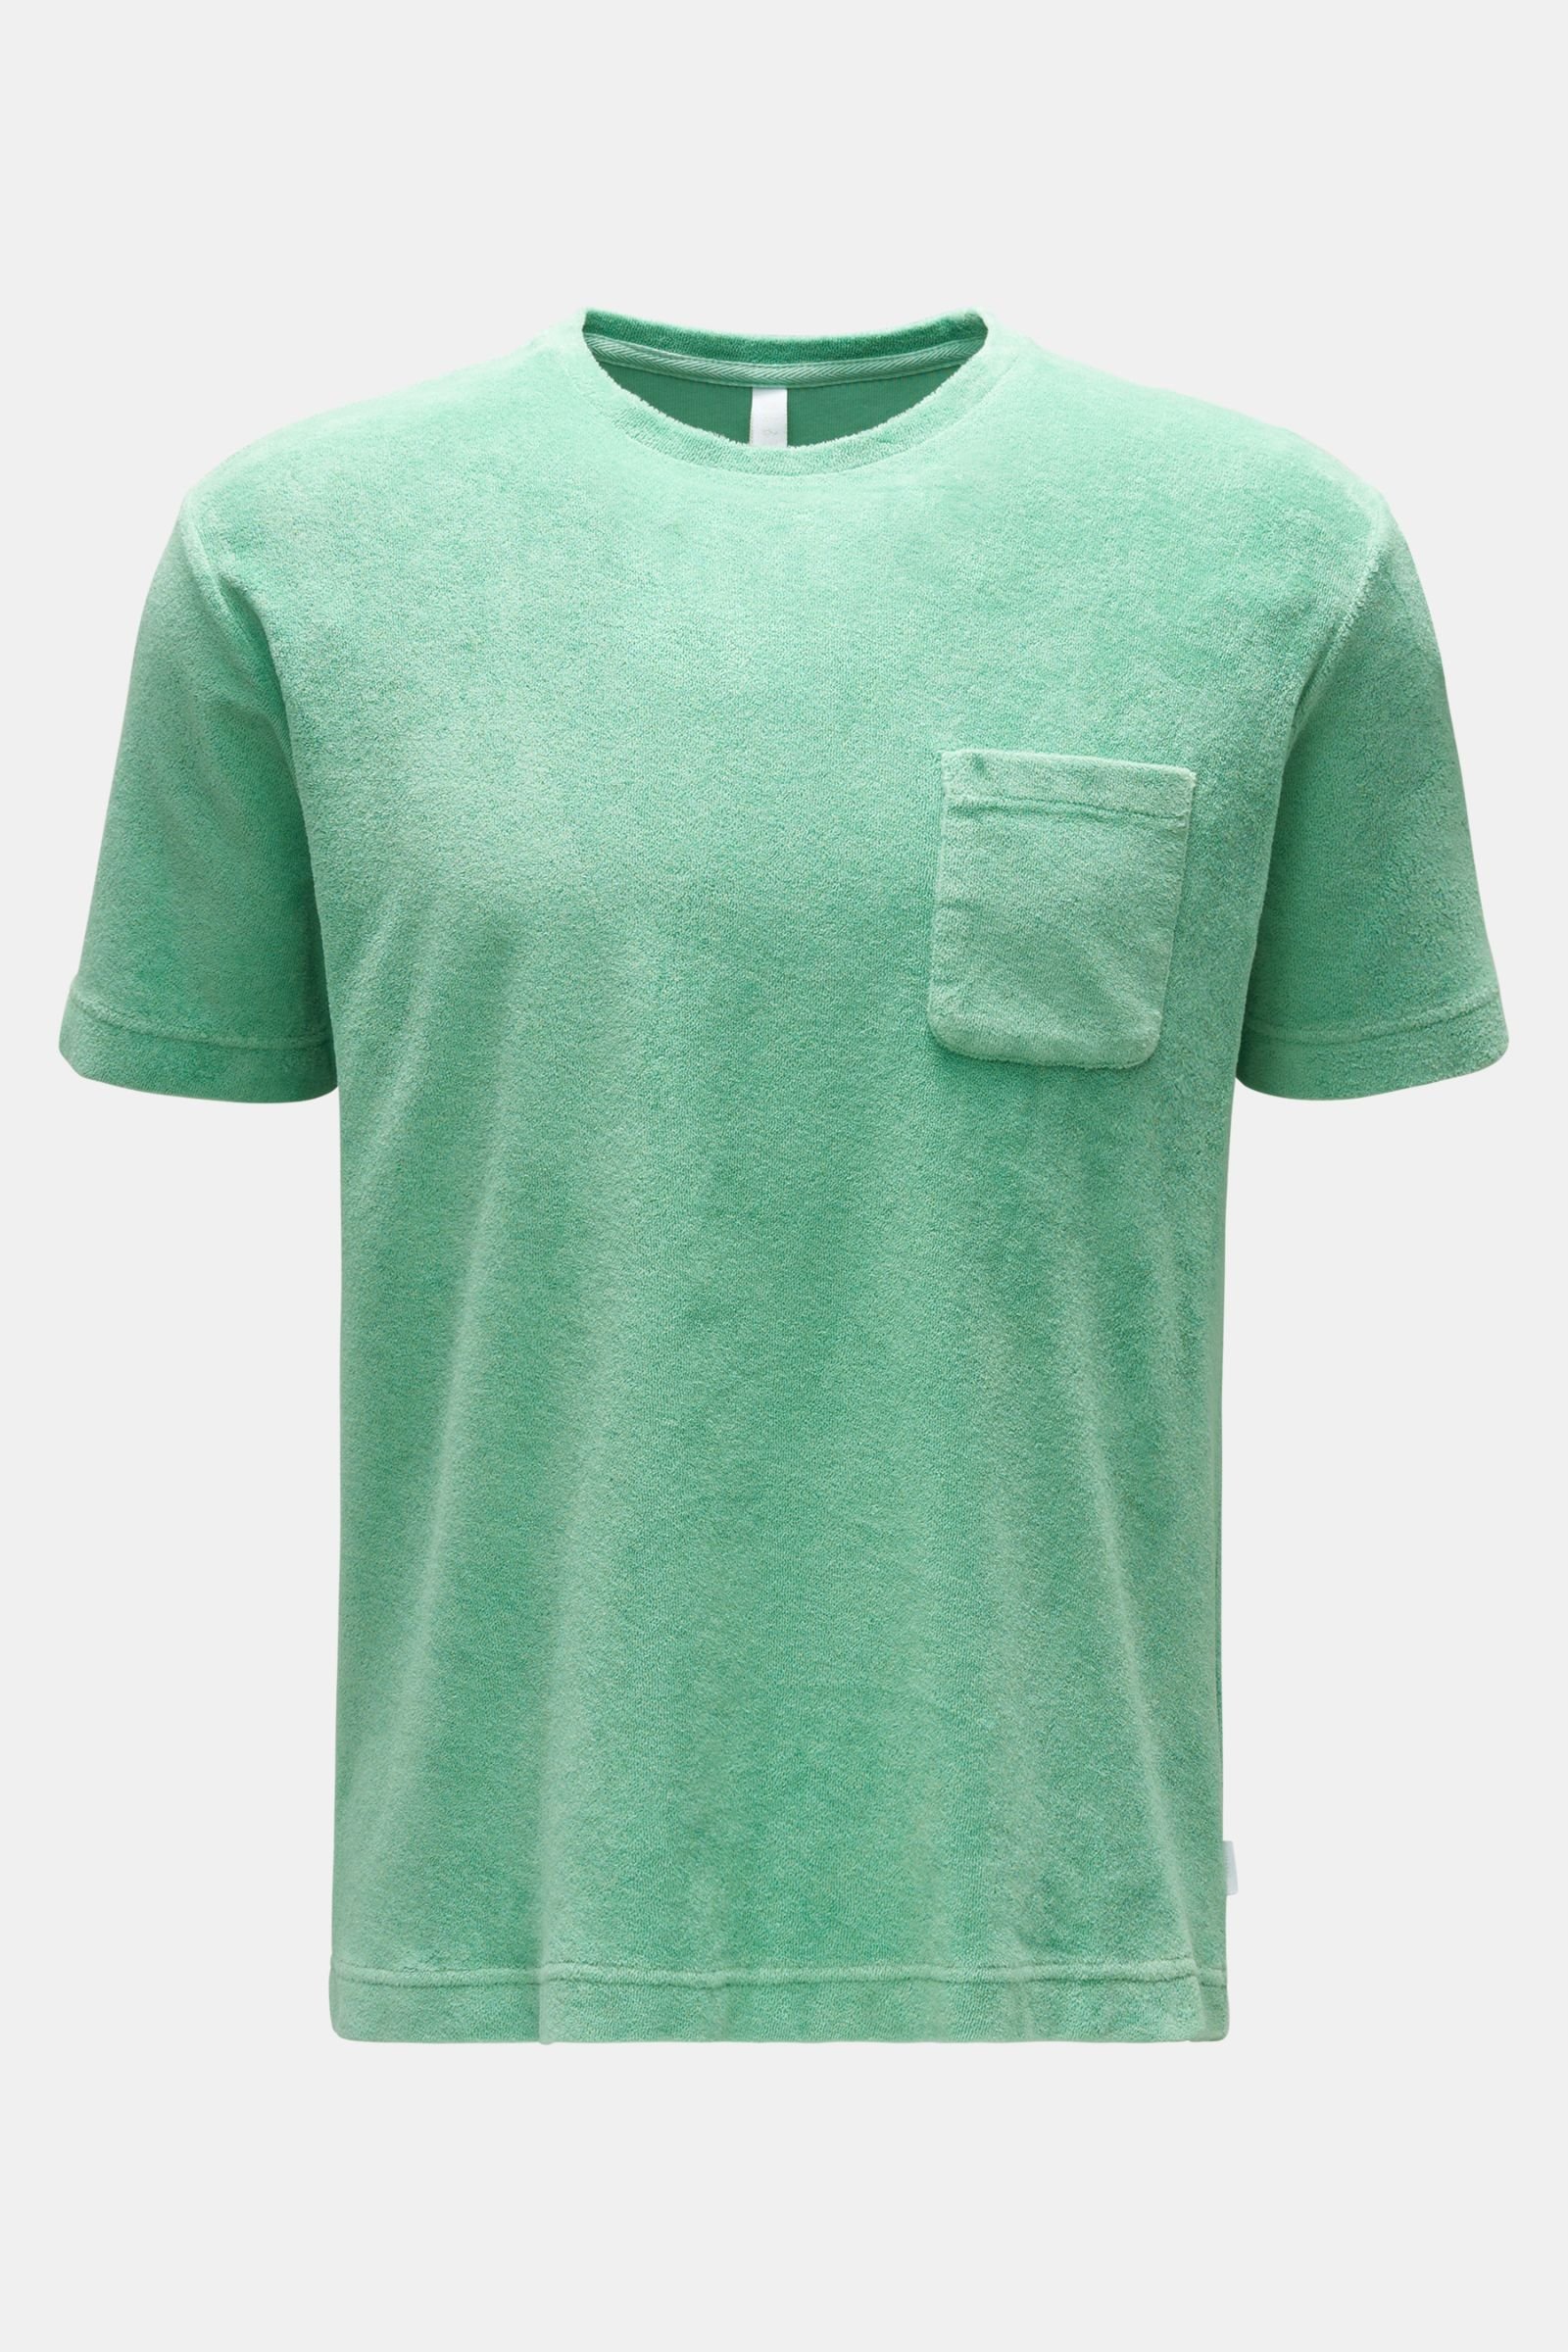 Terry crew neck T-shirt 'Terry Tee' light green